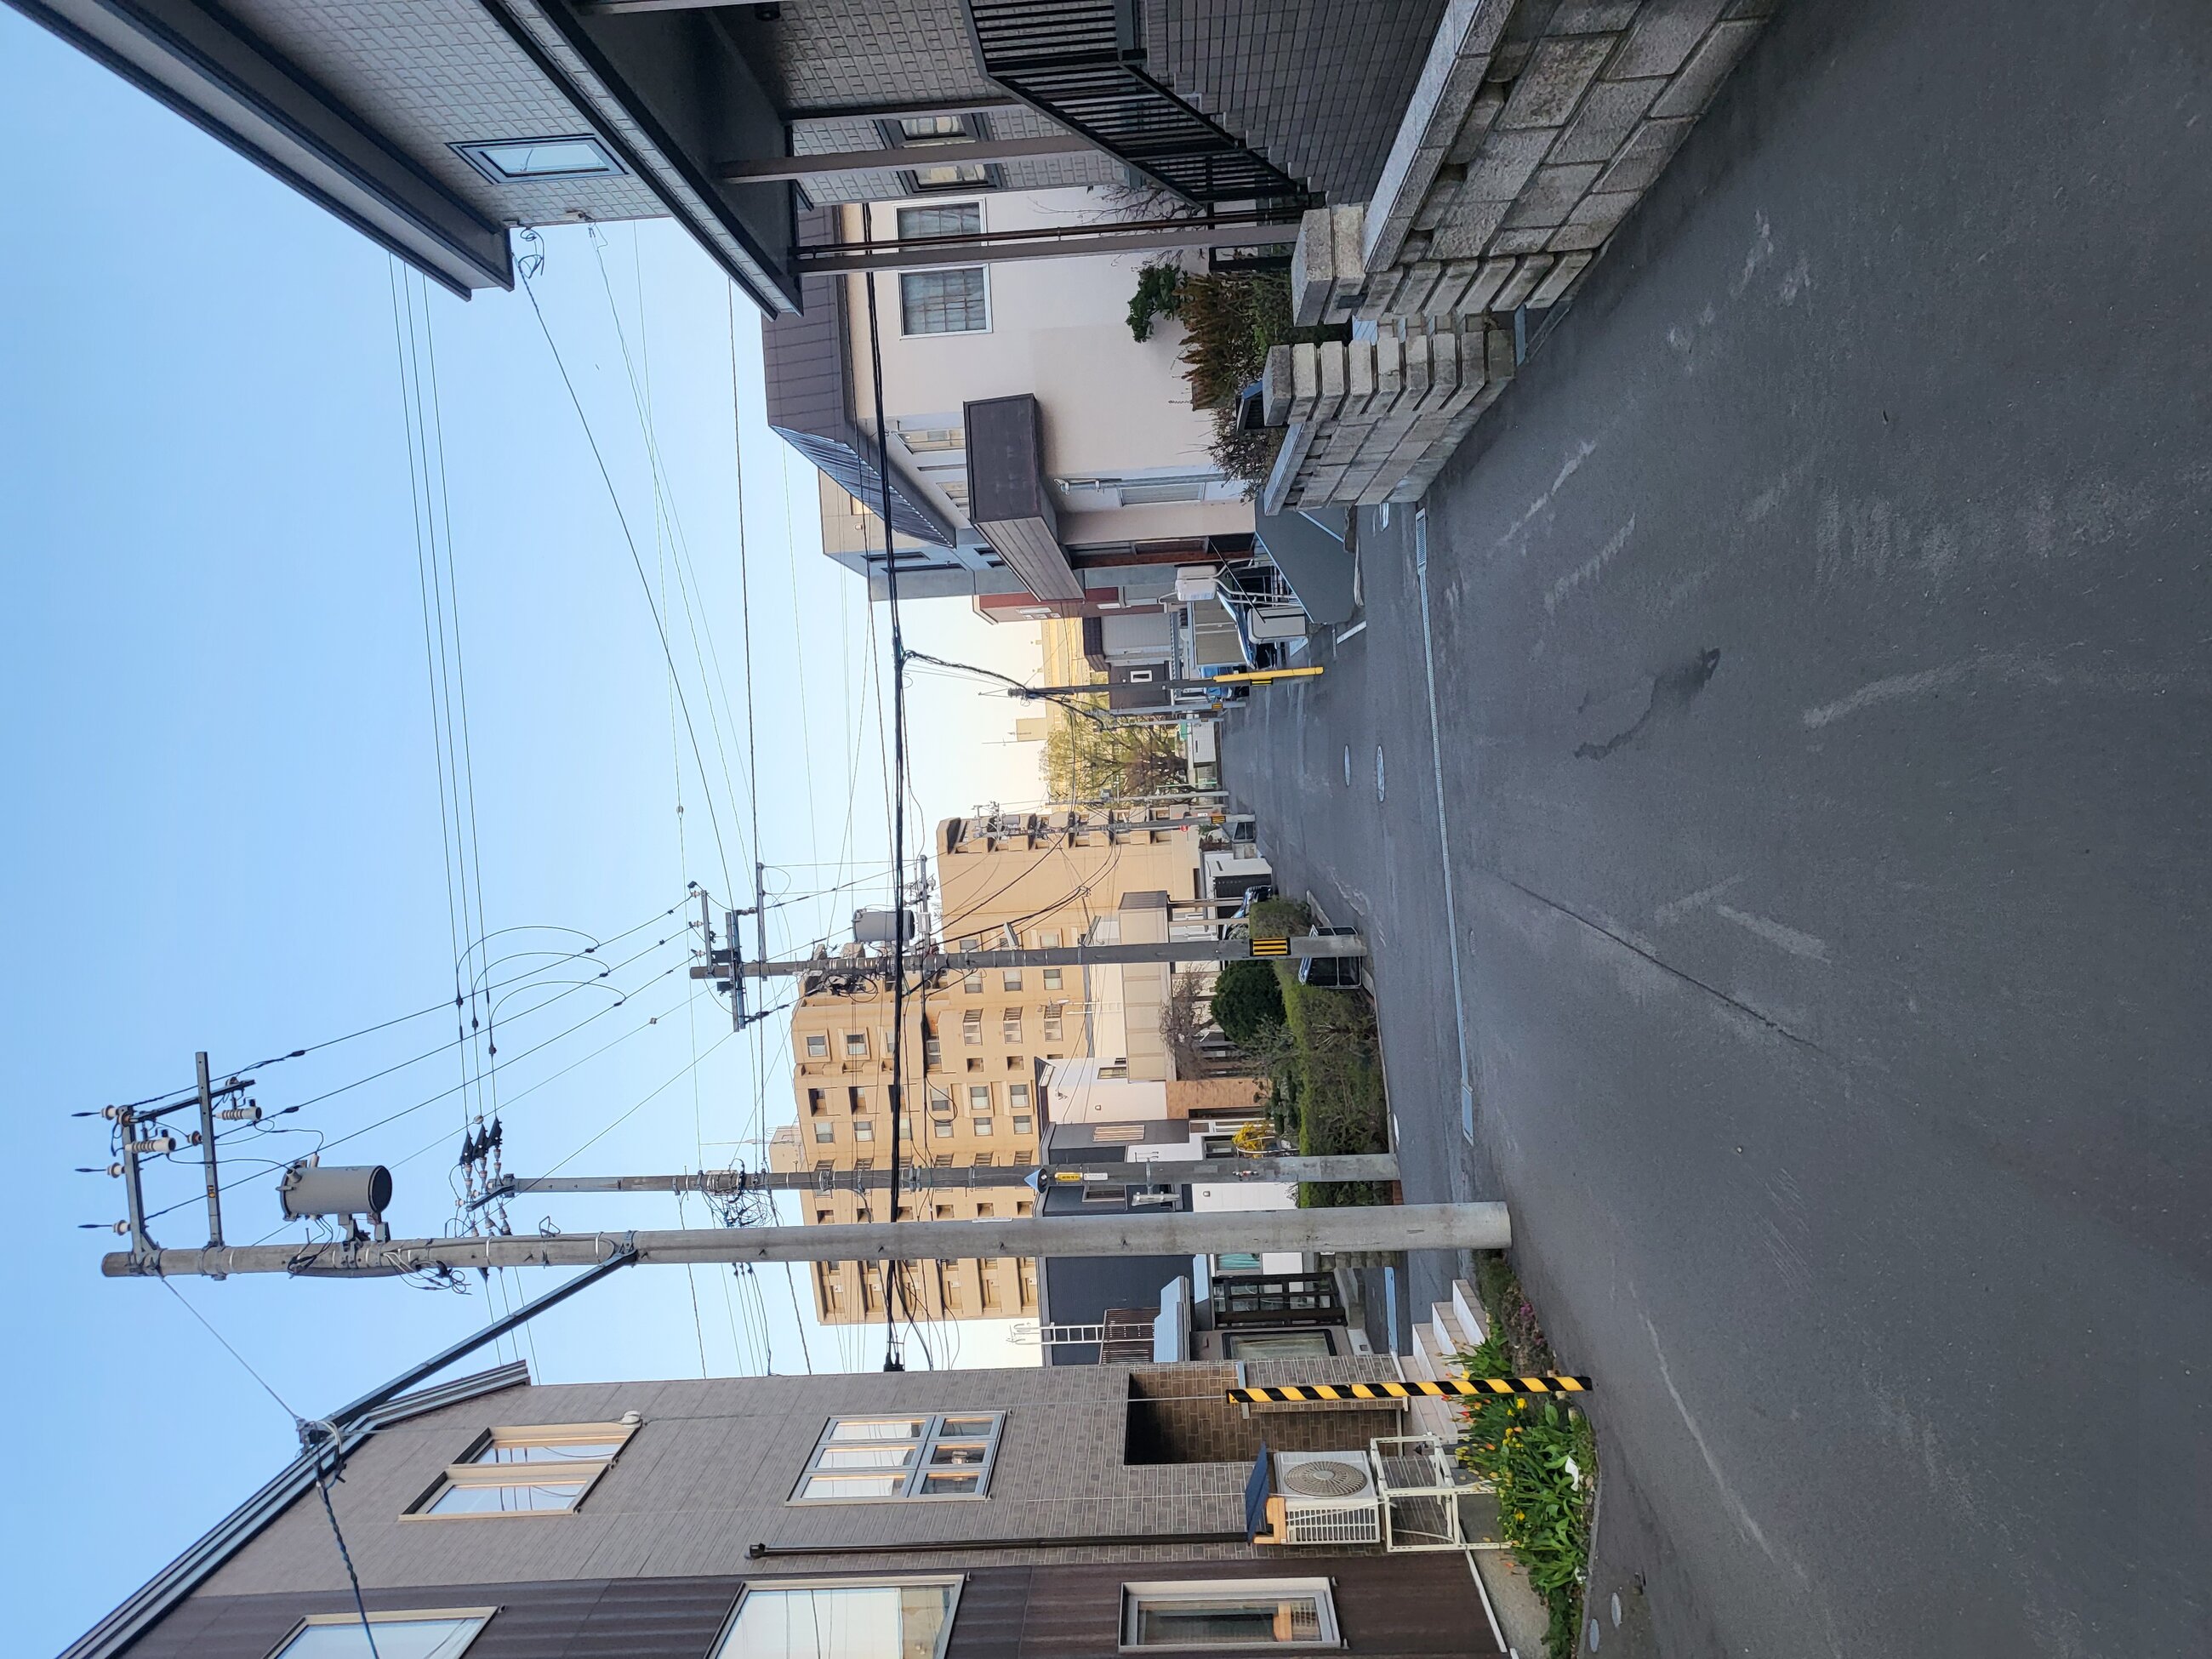 Back street in Sapporo